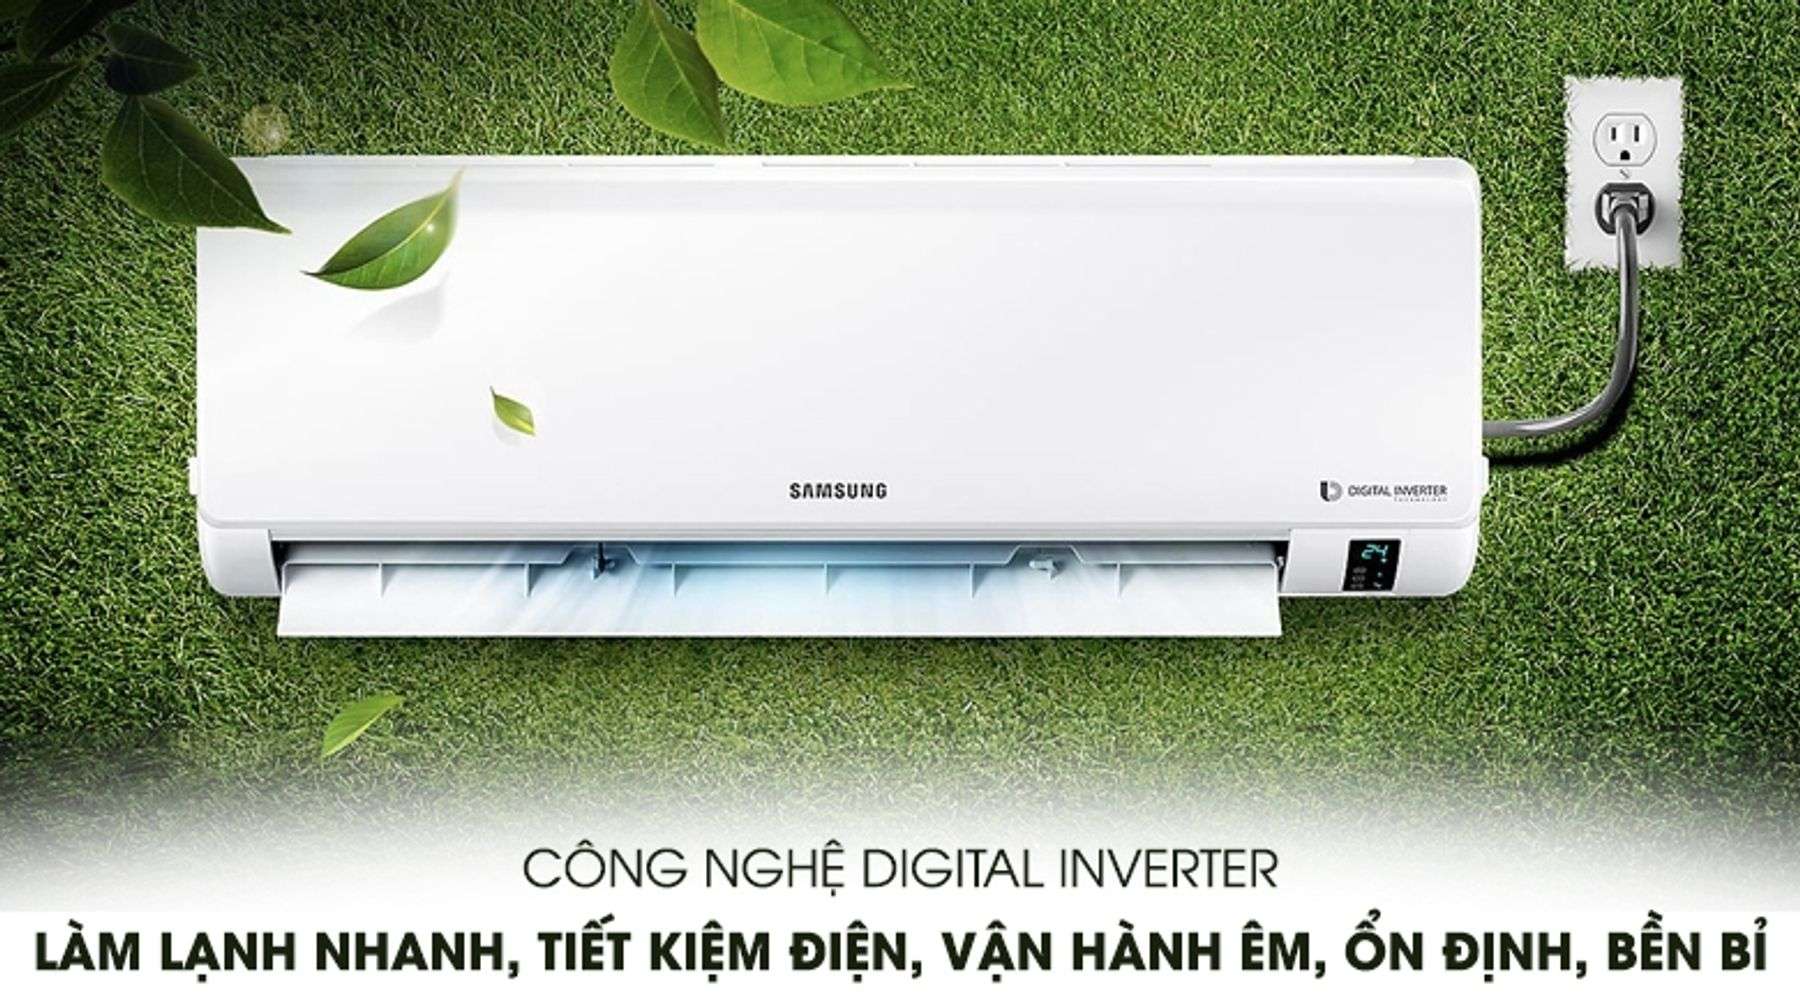 Máy lạnh Samsung Inverter 1.5 HP tiết kiệm điện